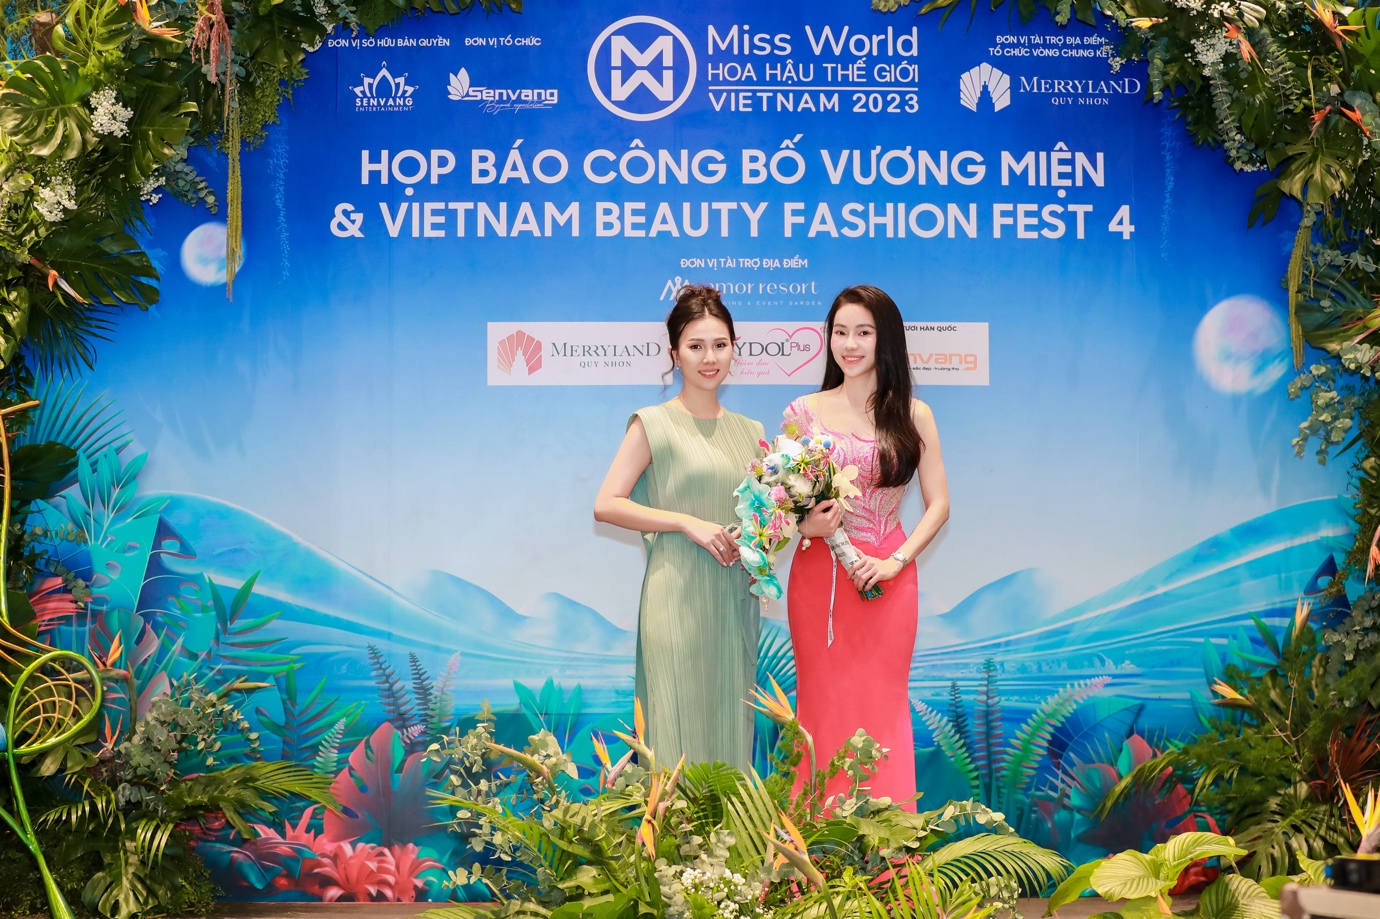 Mỹ phẩm thuần dưỡng ITMF đồng hành cùng Miss World Việt Nam 2023 - Ảnh 3.